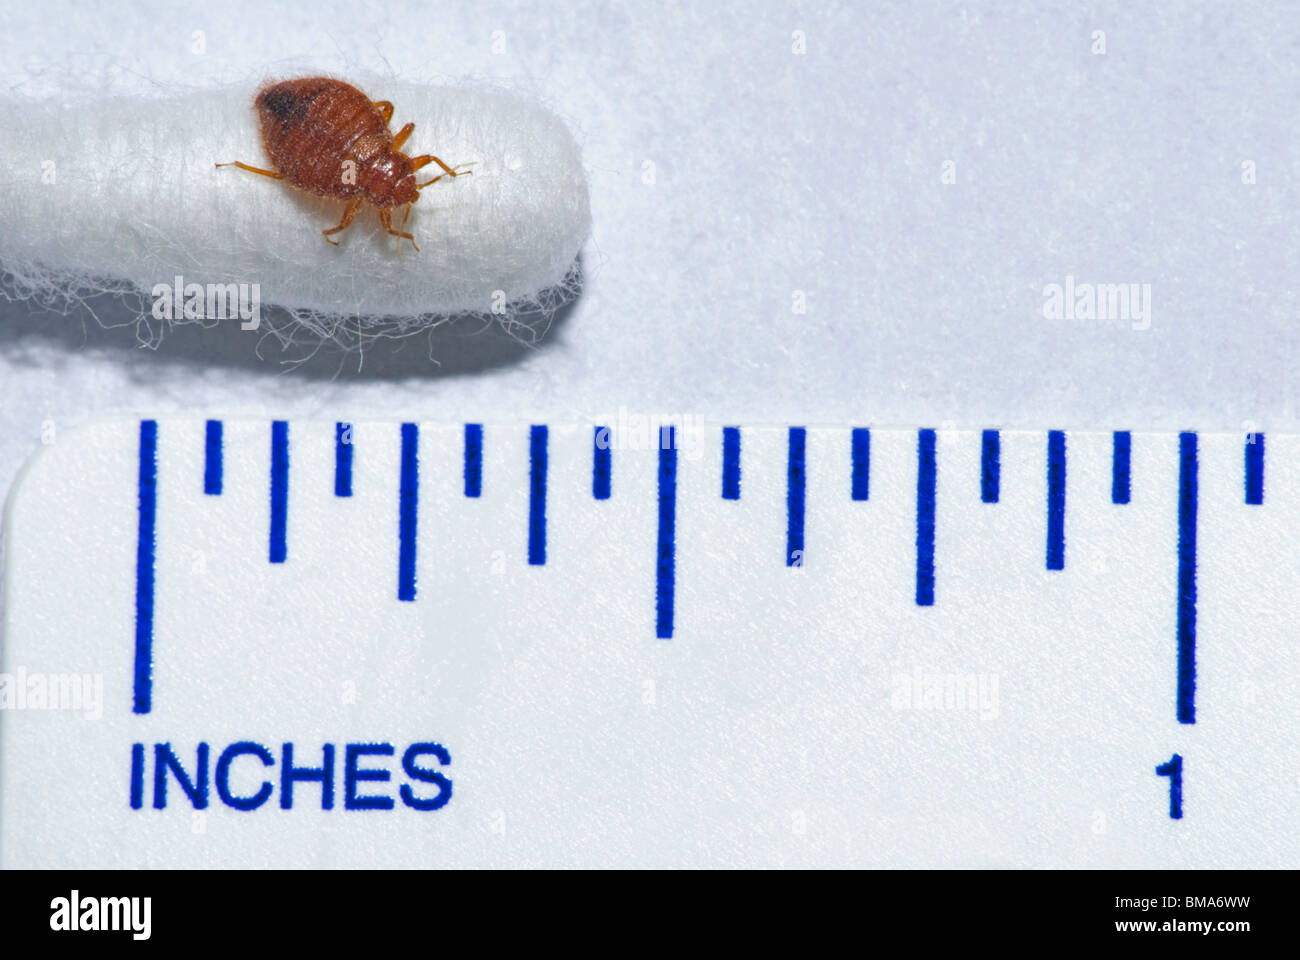 Comune Bedbug adulti- Bed bug (Lepinotus reticulatus) sulla fine del batuffolo di cotone con il righello che mostra la dimensione relazionale di questo insetto infestante. Foto Stock